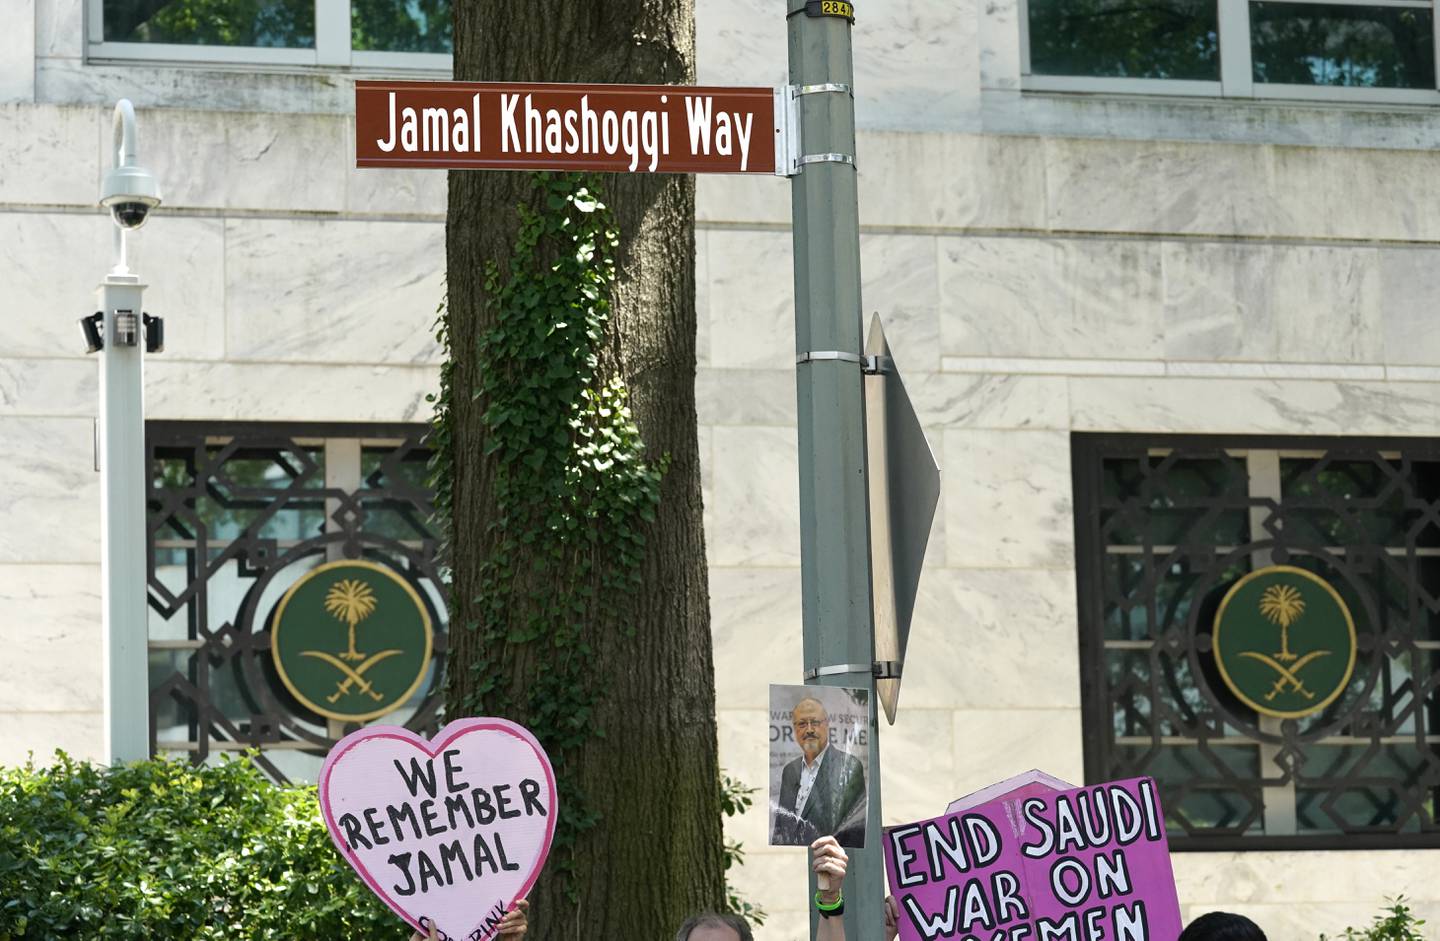 Gaten utenfor Saudi-Arabias ambassade i Washington heter nå Jamal Khashoggi Way. President Joe Biden sier han tok opp drapet med Saudi-Arabias kronprins under et møte i Jeddah fredag. Arkivfoto: Gemunu Amarasinghe / AP / NTB